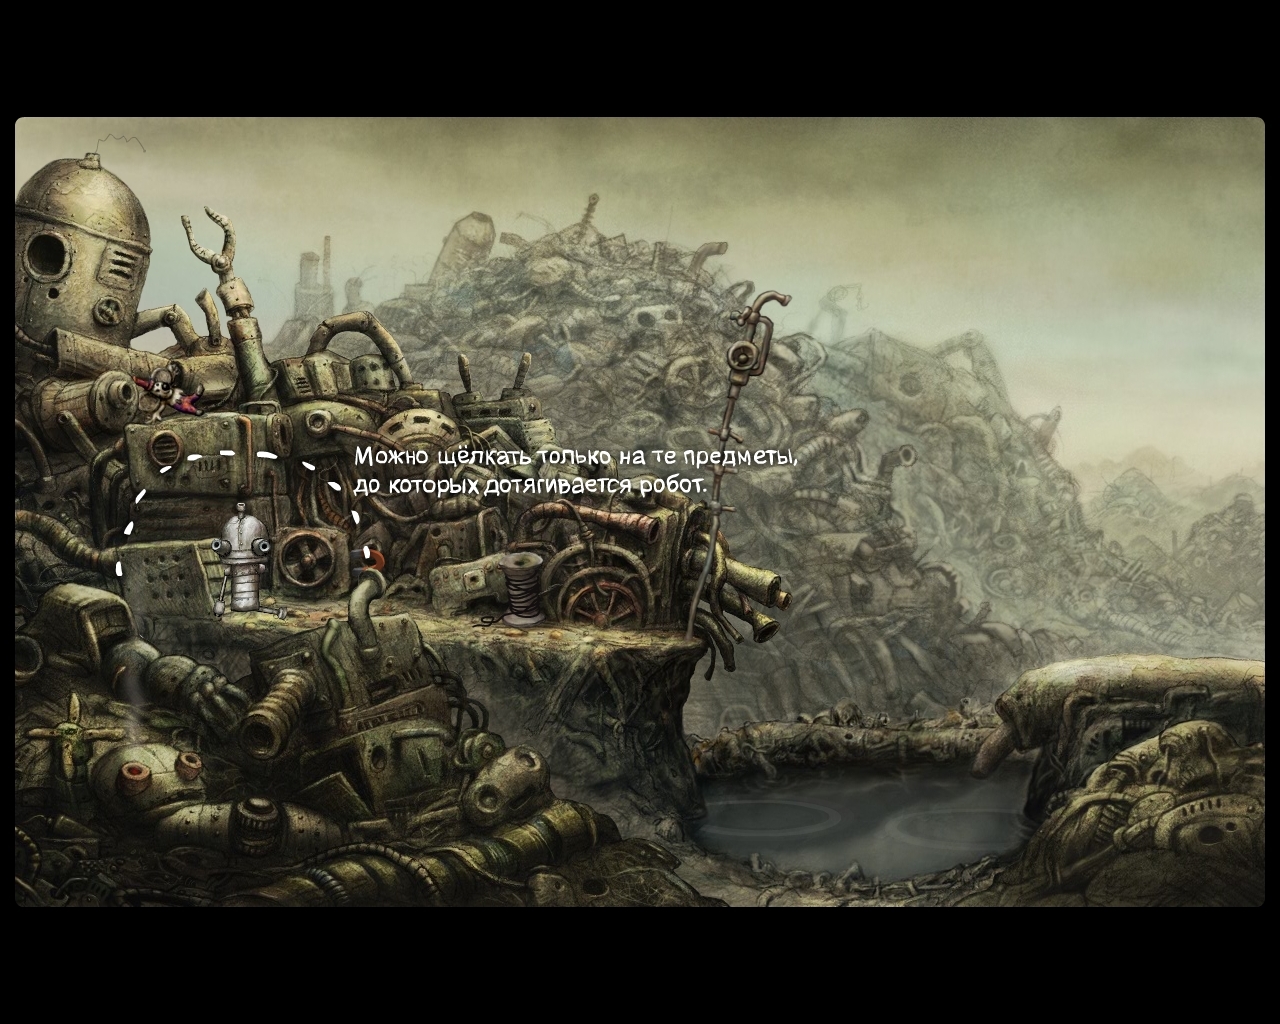 Скриншот из игры Machinarium под номером 15